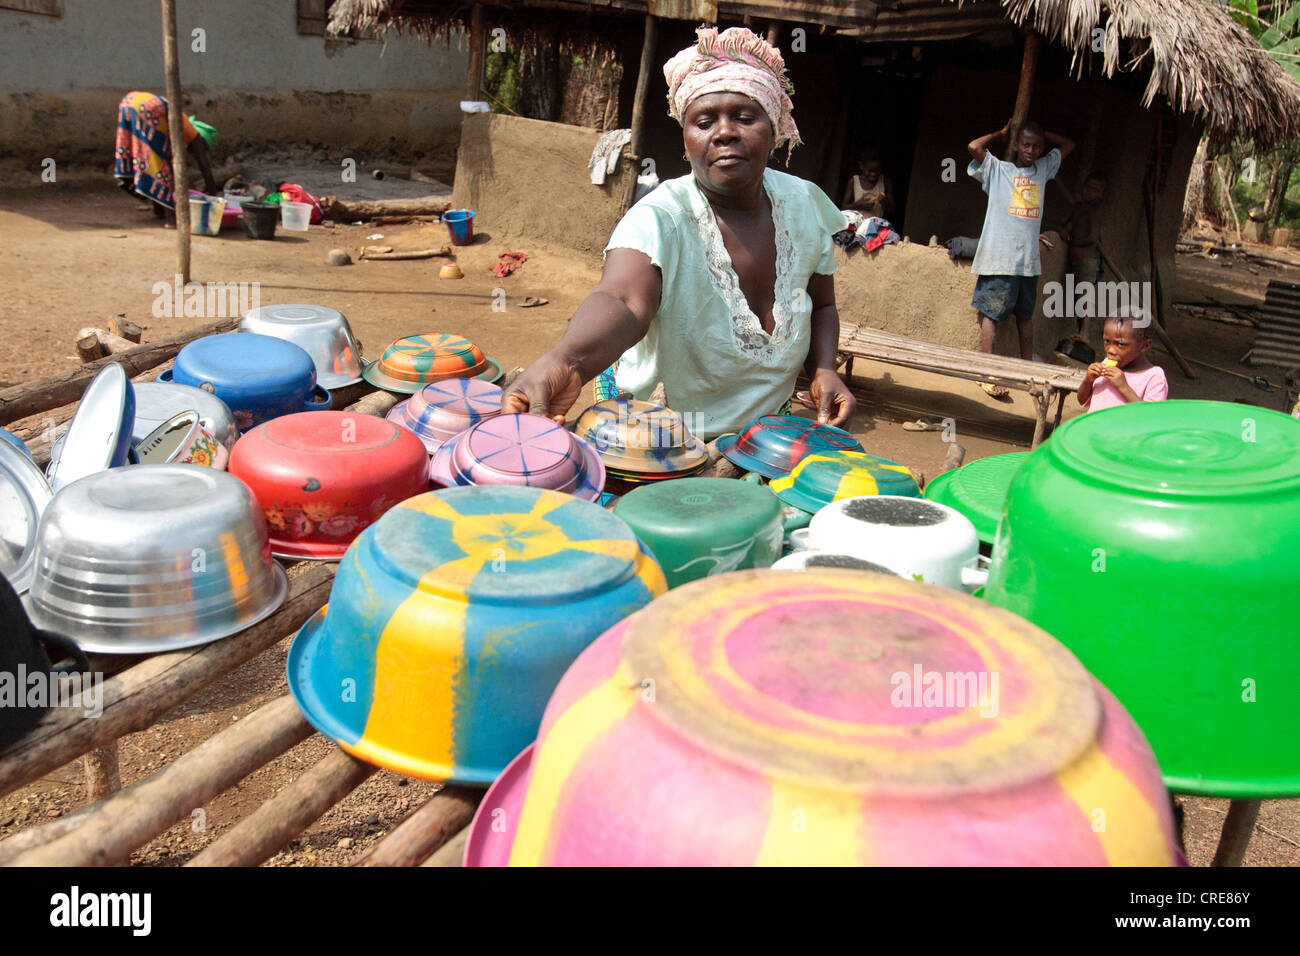 Une femme présente des bols, des pots et des plats internationaux sur un égouttoir, utilisé pour sécher la vaisselle au lieu de les poser directement sur le sol Banque D'Images